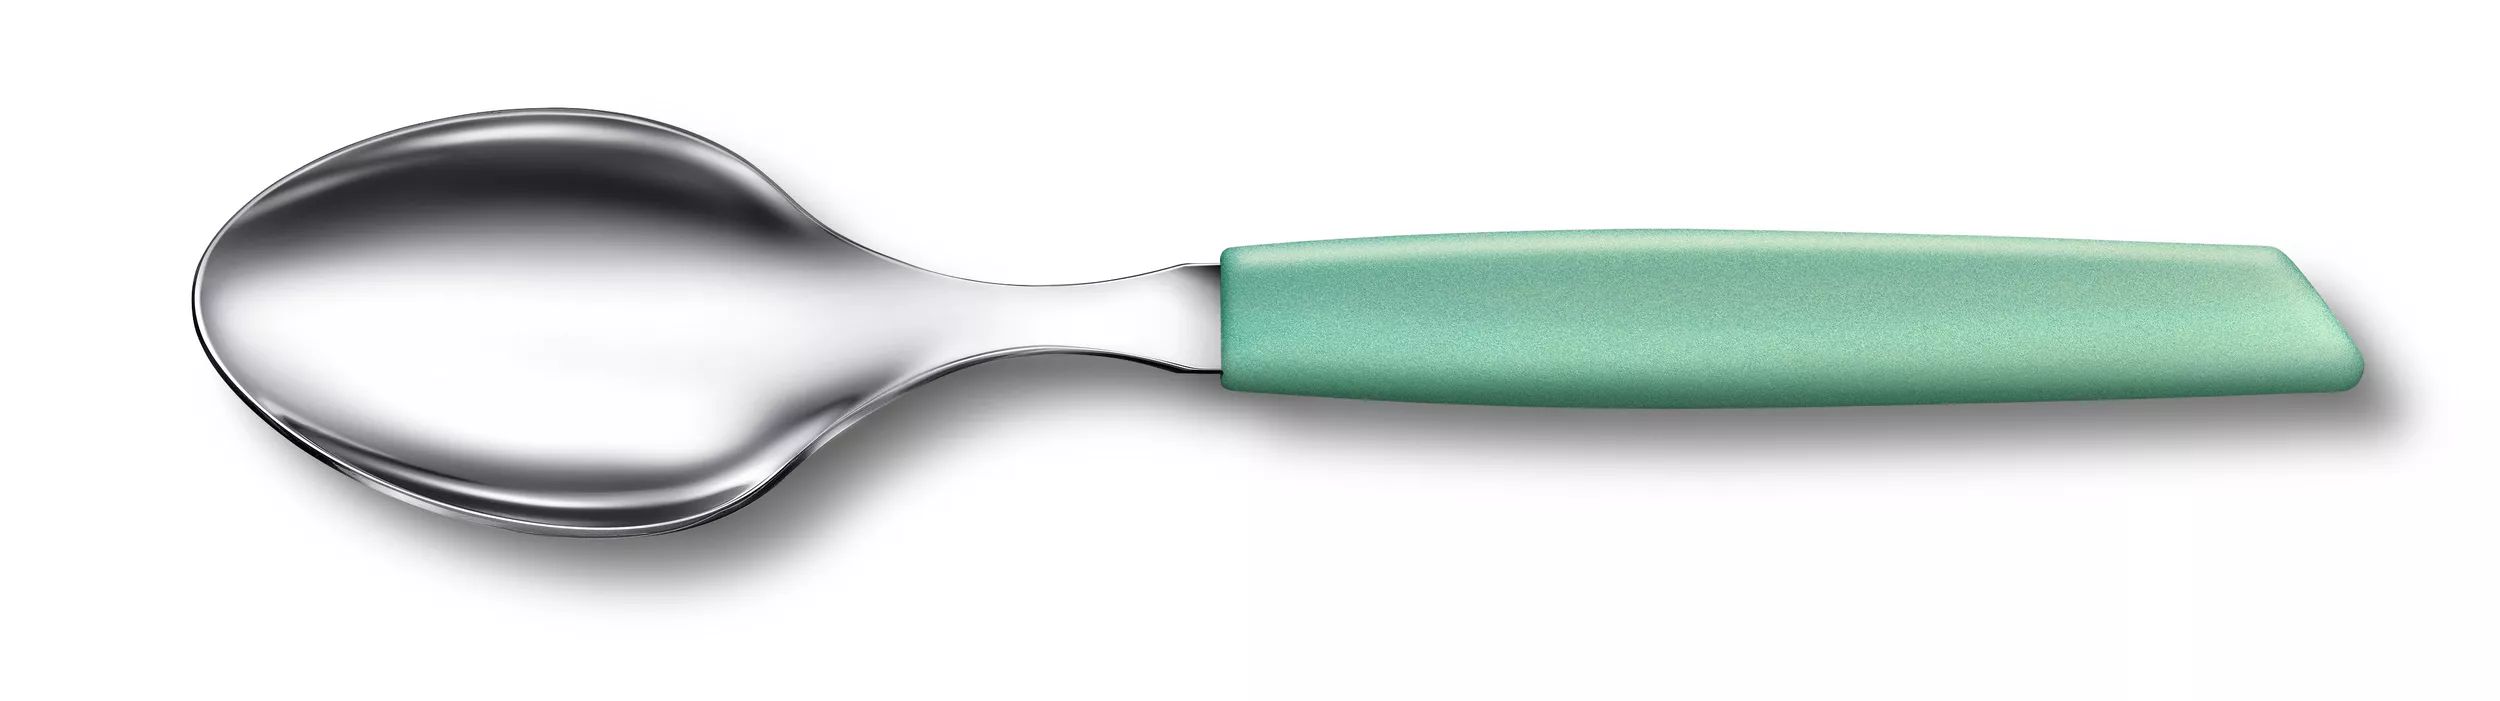 Swiss Modern Table Spoon-6.9036.0841